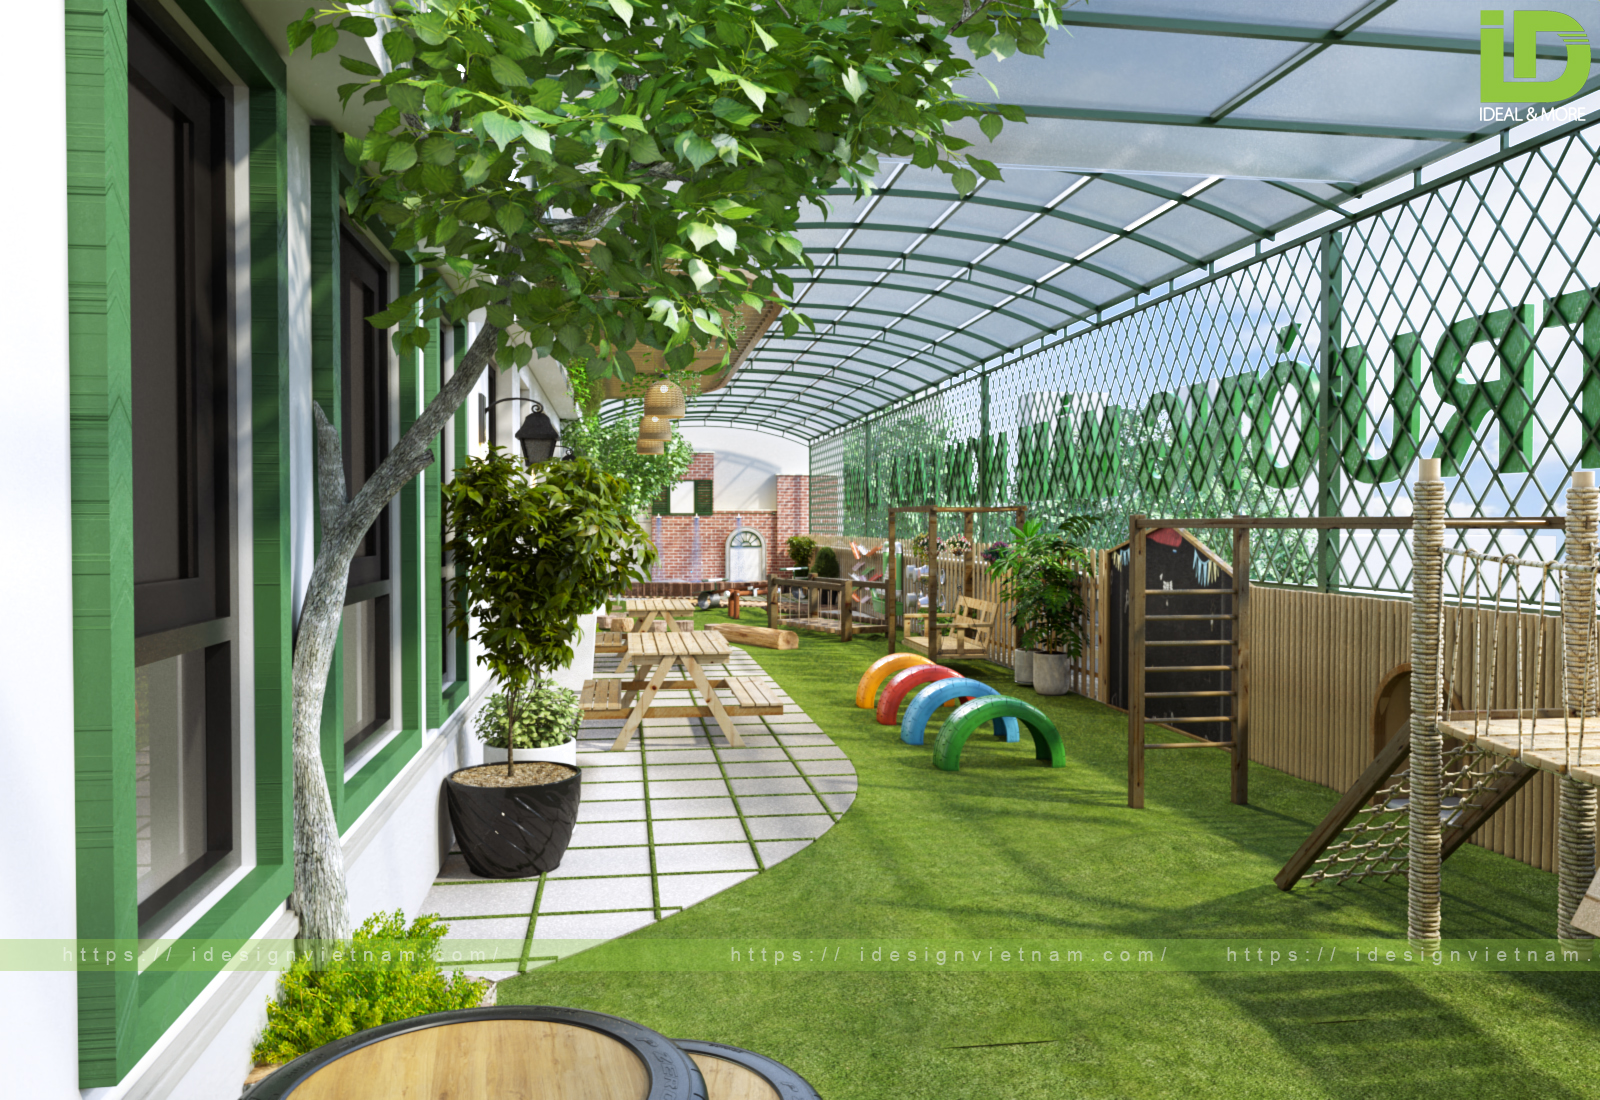 thiết kế sân vườn kết hợp sân chơi  cho trường mầm non